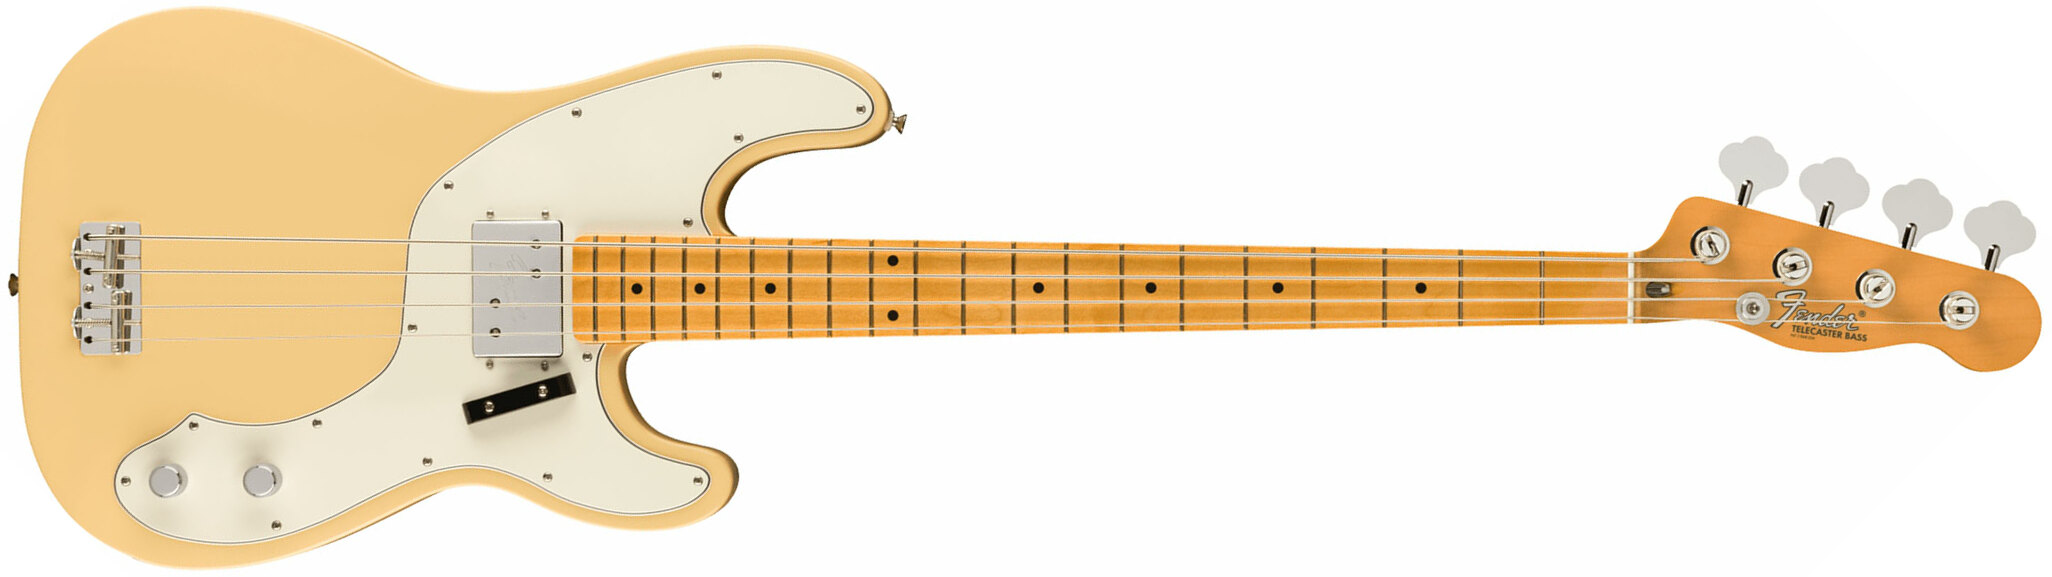 Fender Tele Bass 70s Vintera 2 Mex Mn - Vintage White - Basse Électrique Solid Body - Main picture